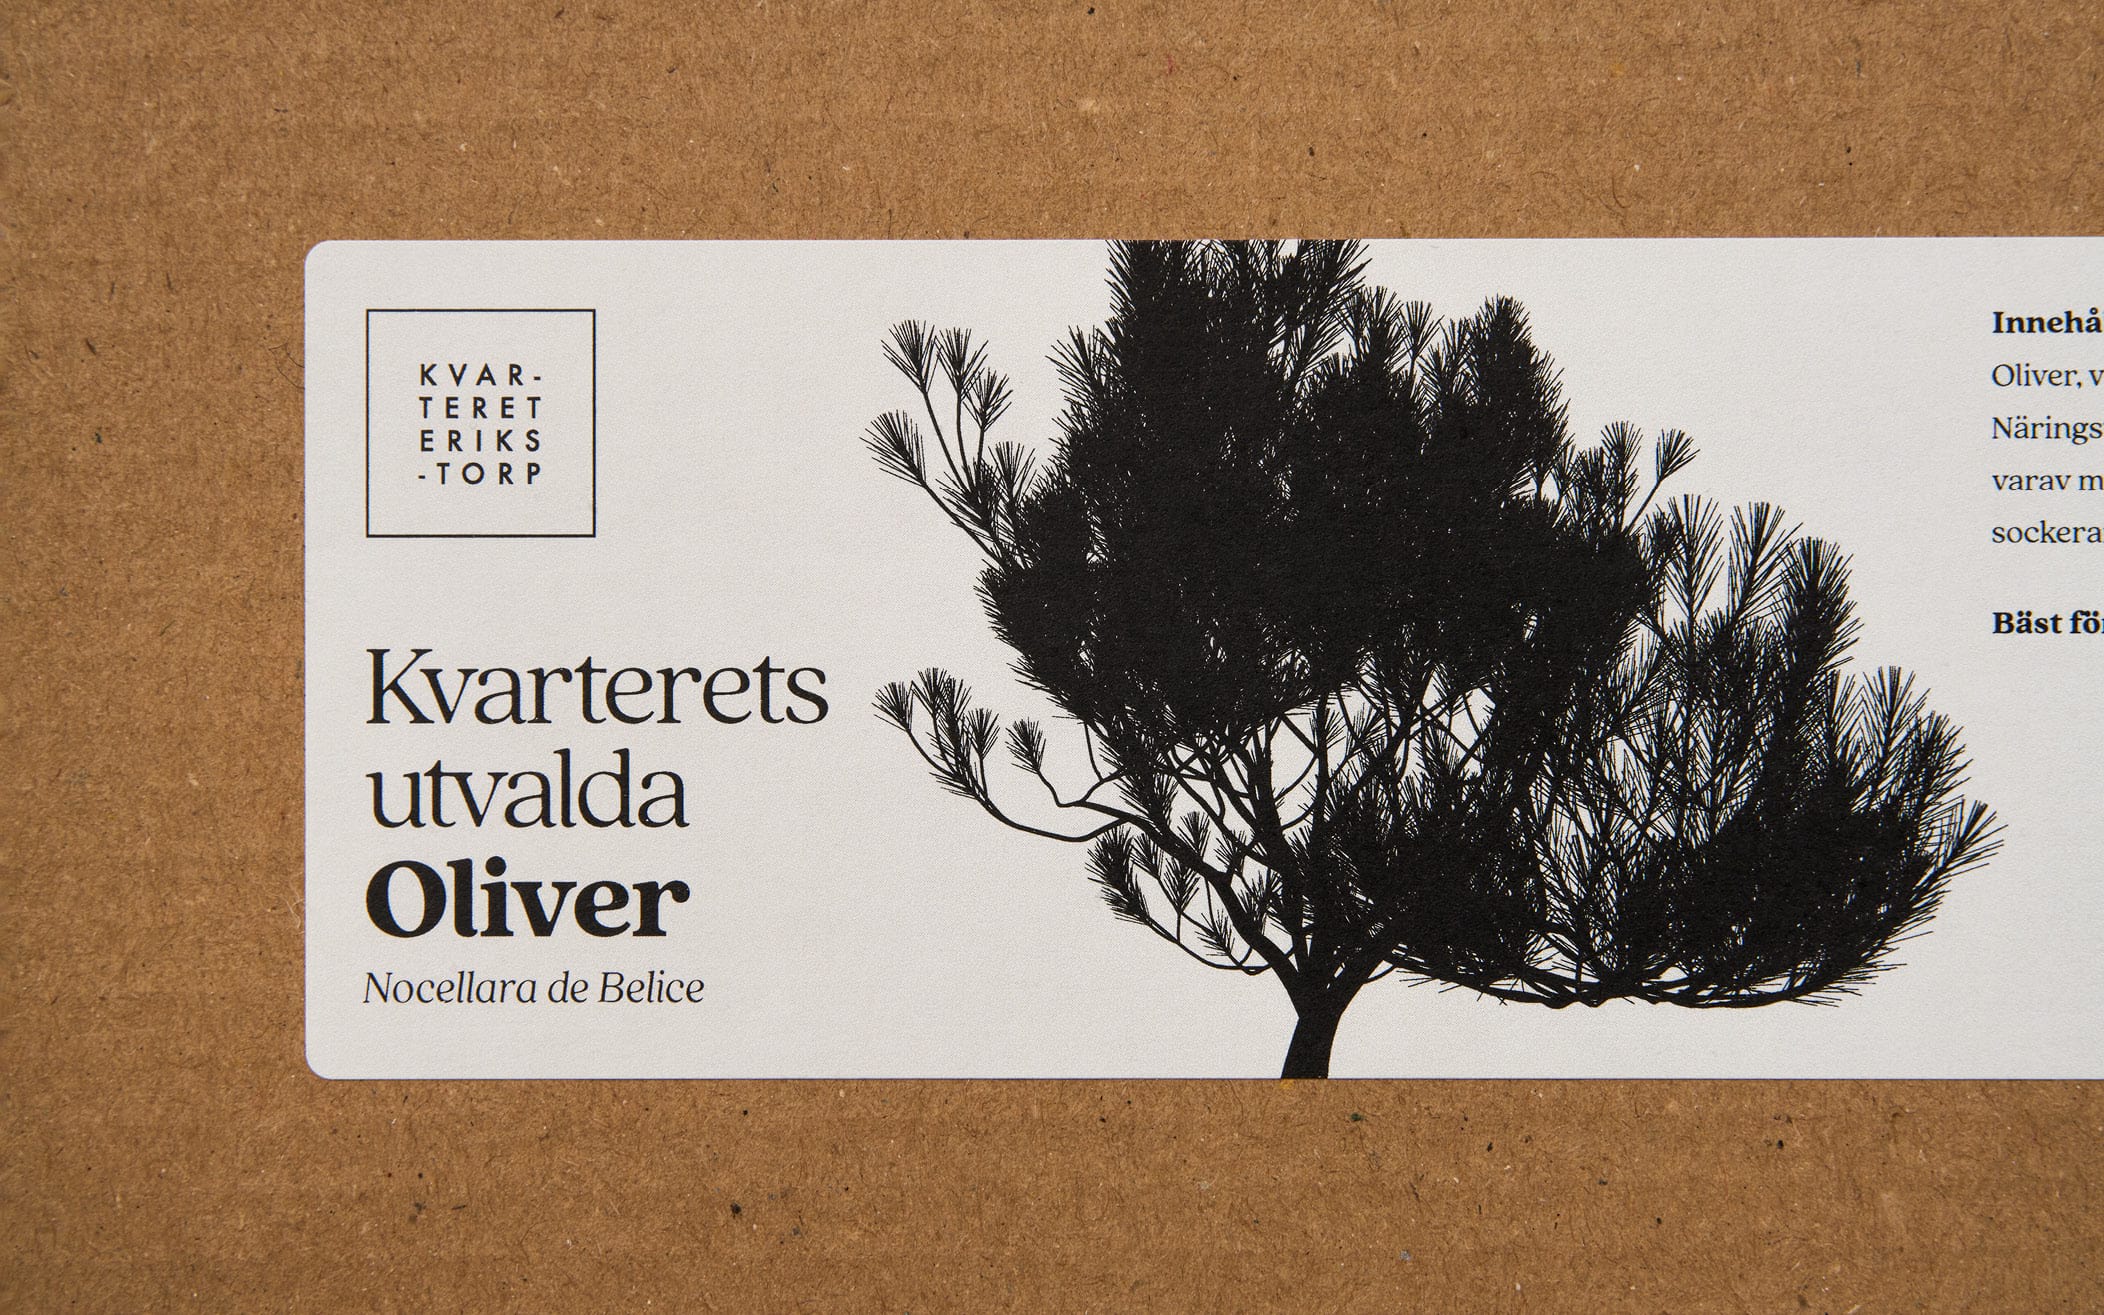 Kvarteret erikstorps logga med oliver klistrat på wellpapp